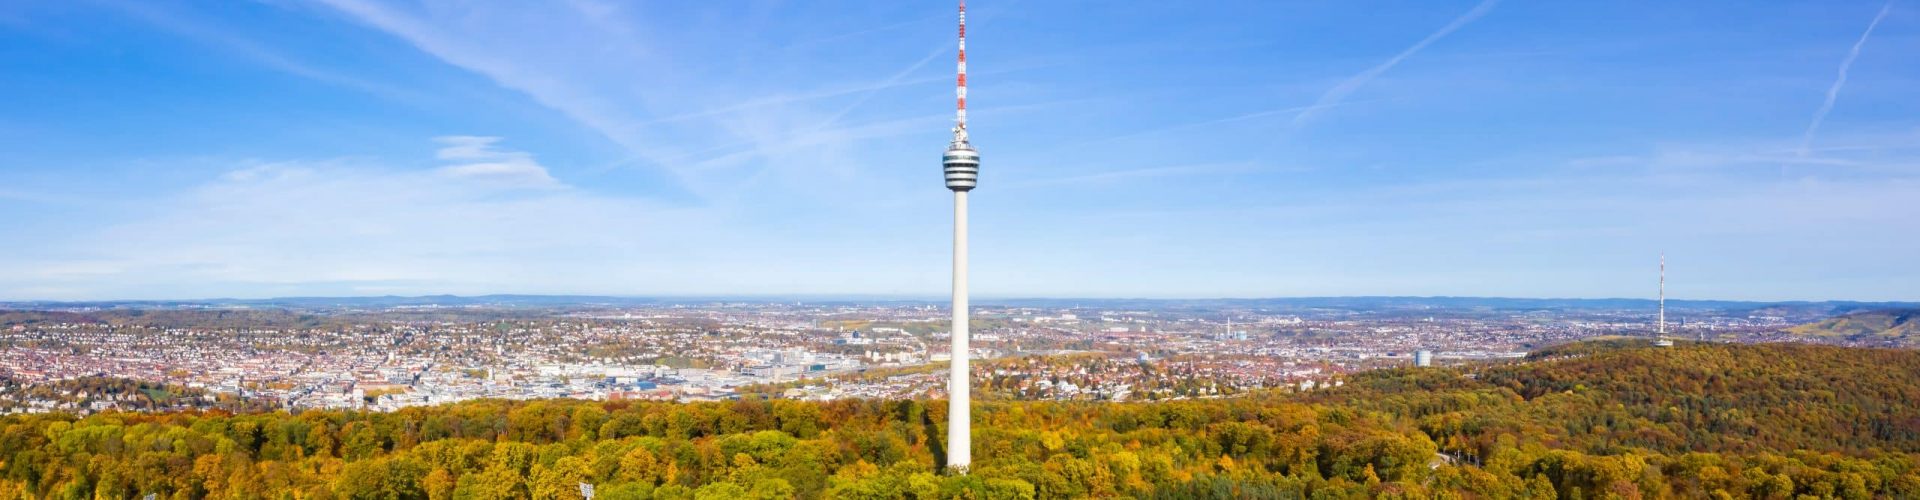 Immobilienmakler Stuttgart Sillenbuch - Panorama Bild vom Fernsehturm über Stuttgart